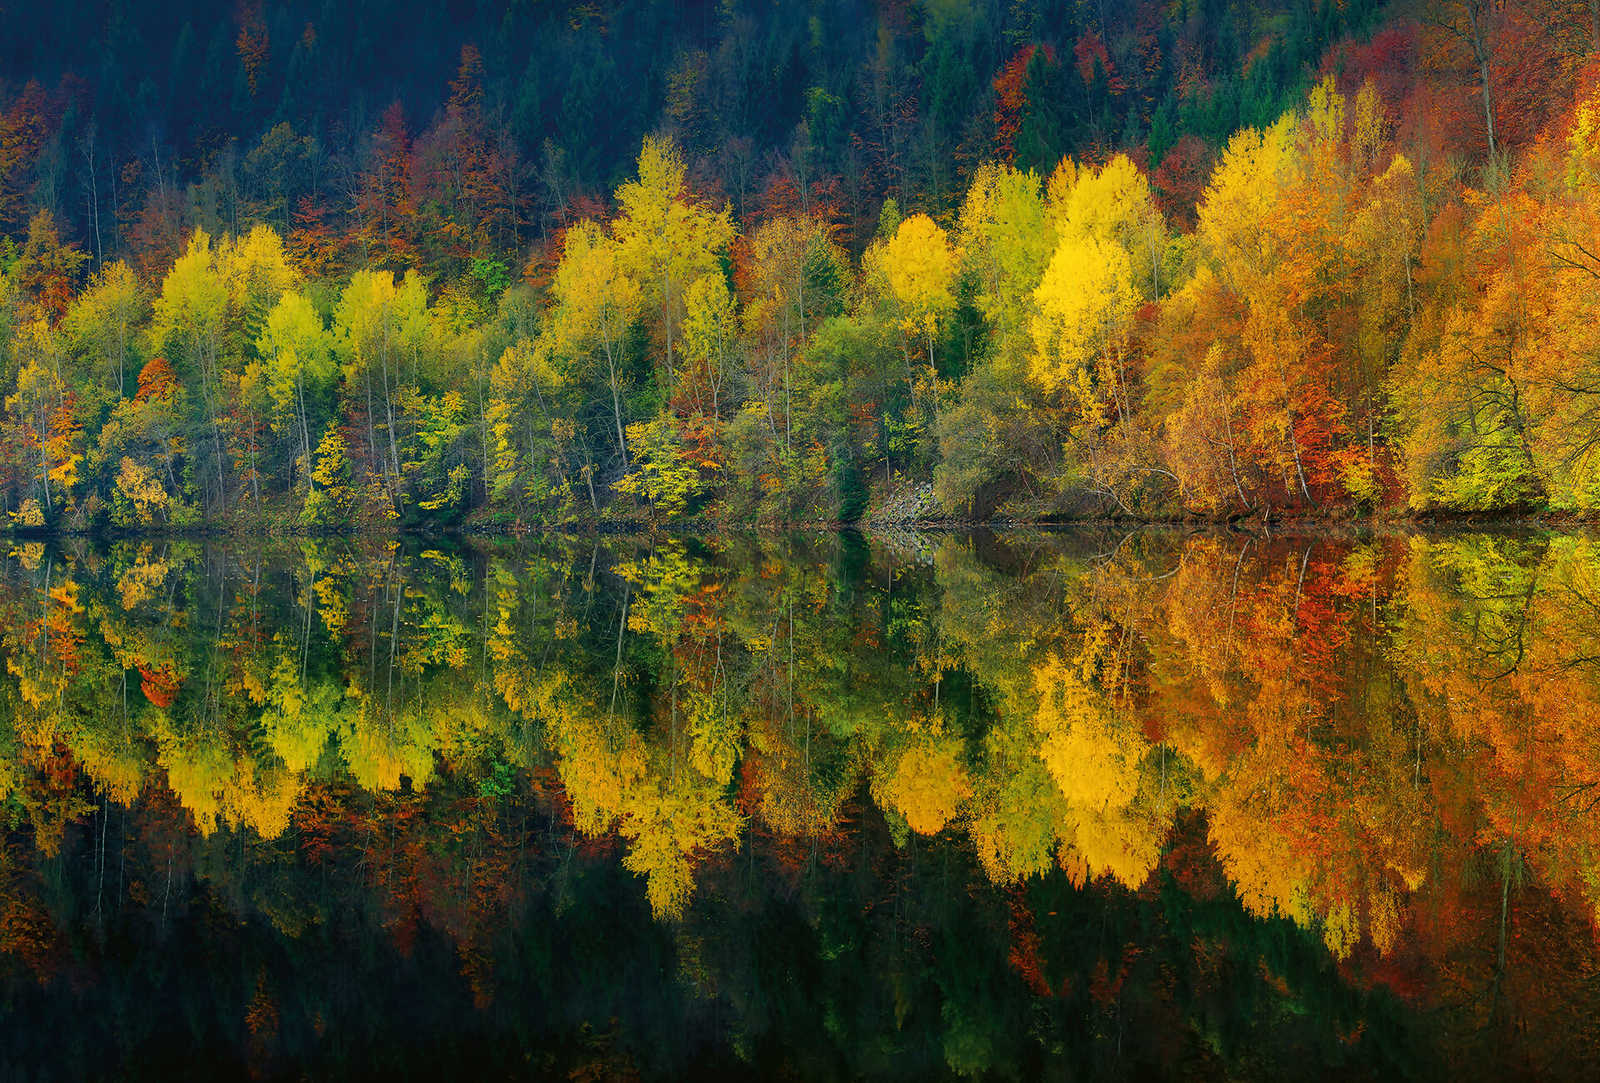 Fotomural Bosque junto al lago en otoño - Amarillo, naranja, verde
